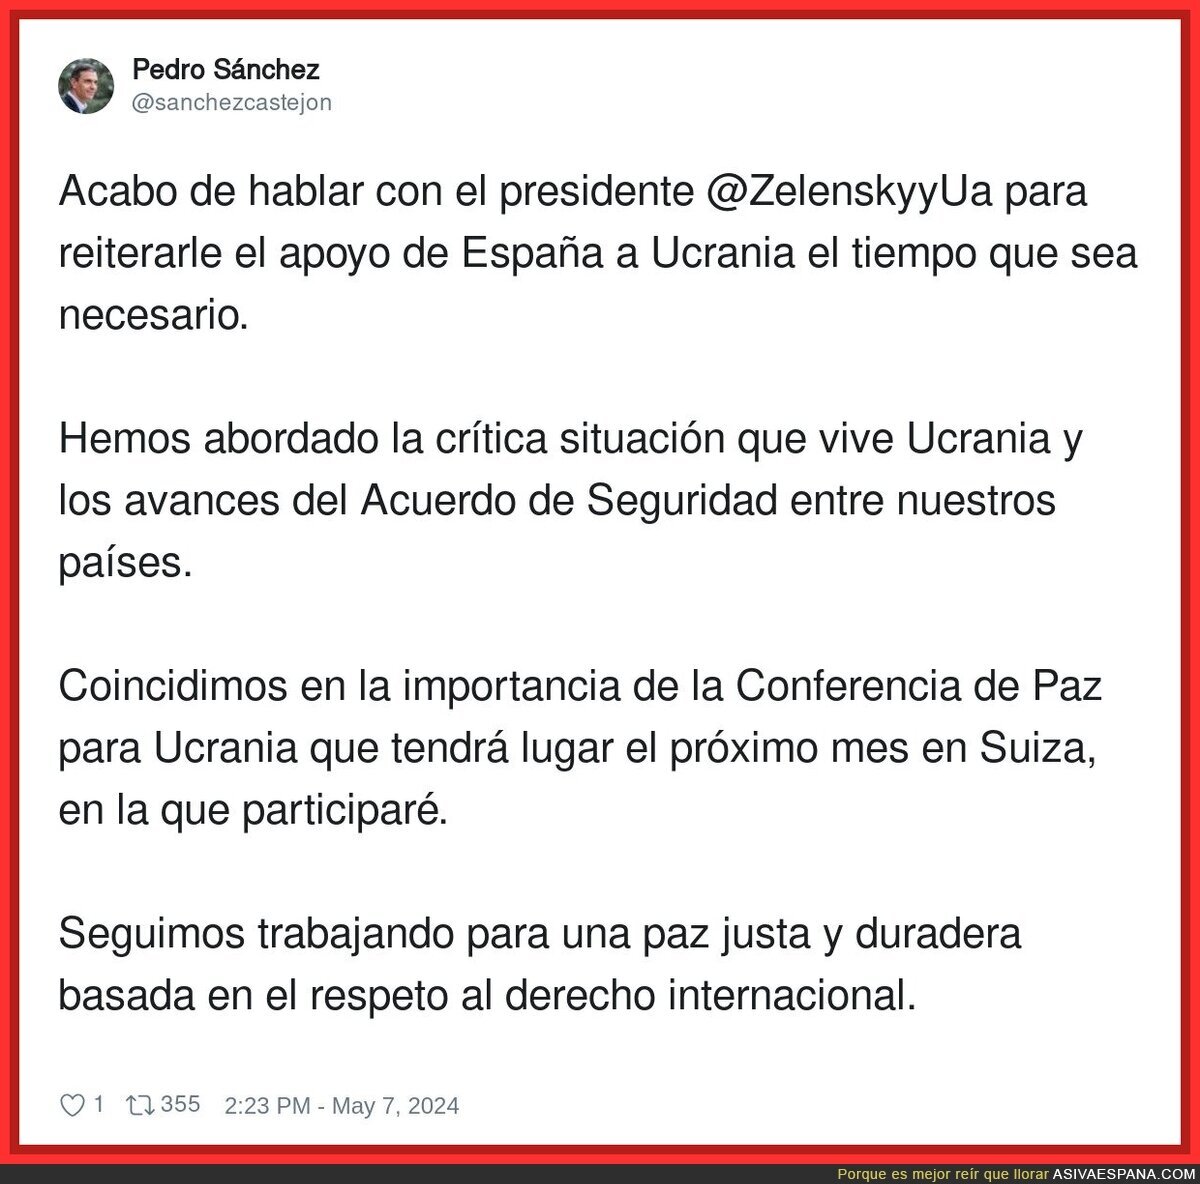 Pedro Sánchez sigue apoyando a Zelenski